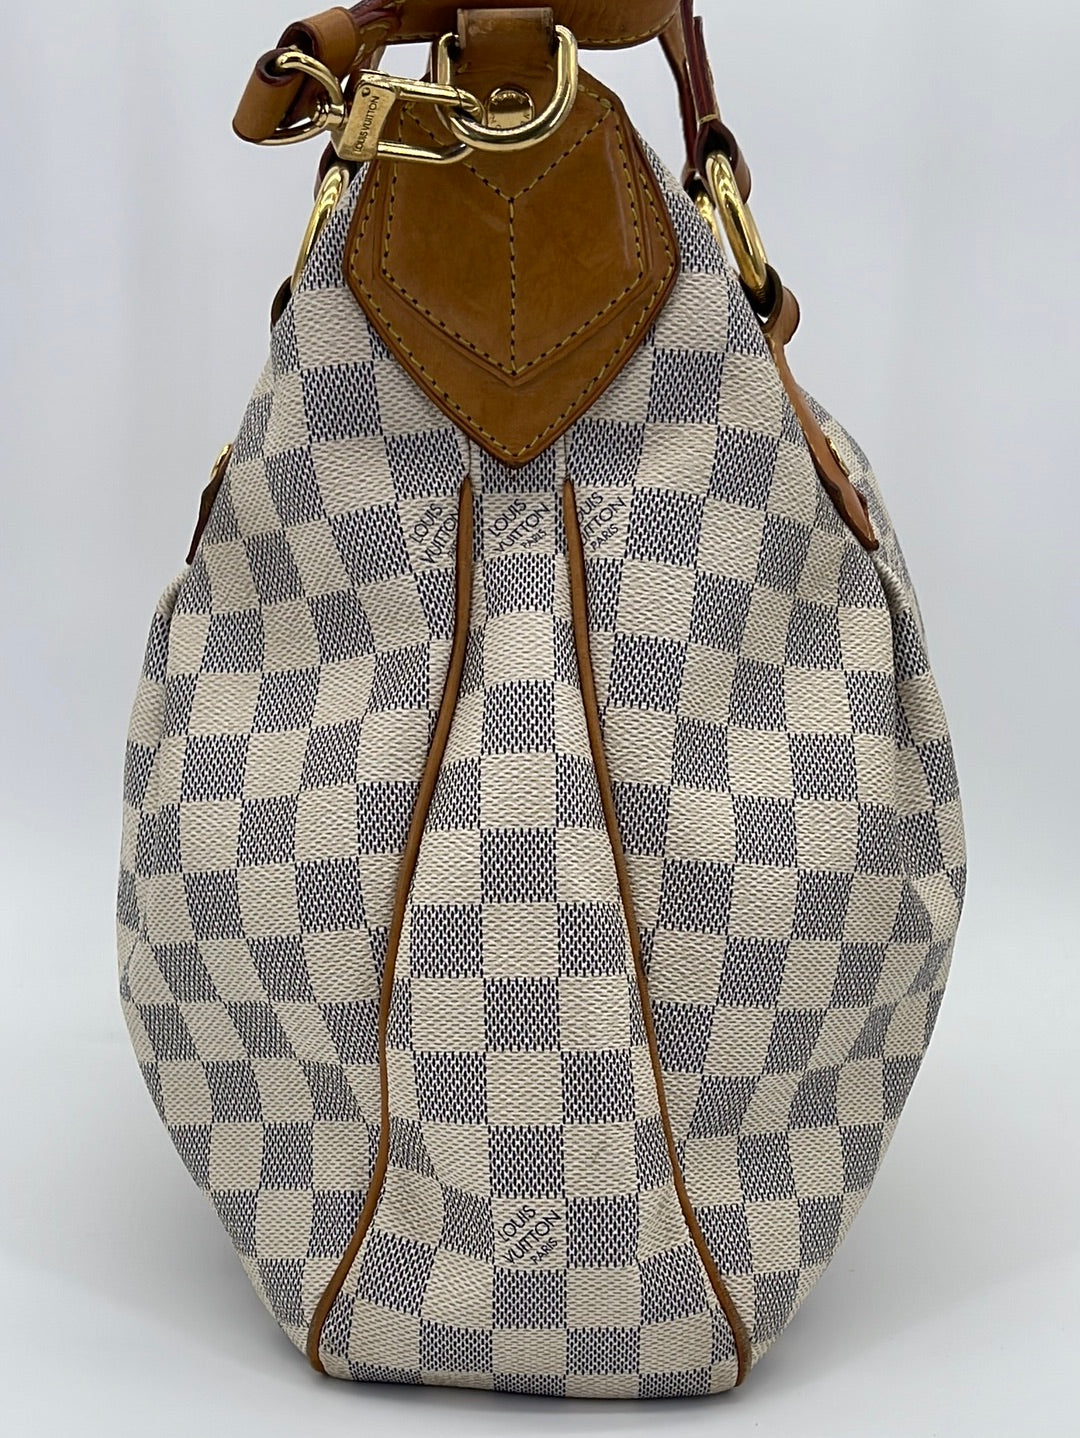 Evora MM Damier Azur – Keeks Designer Handbags